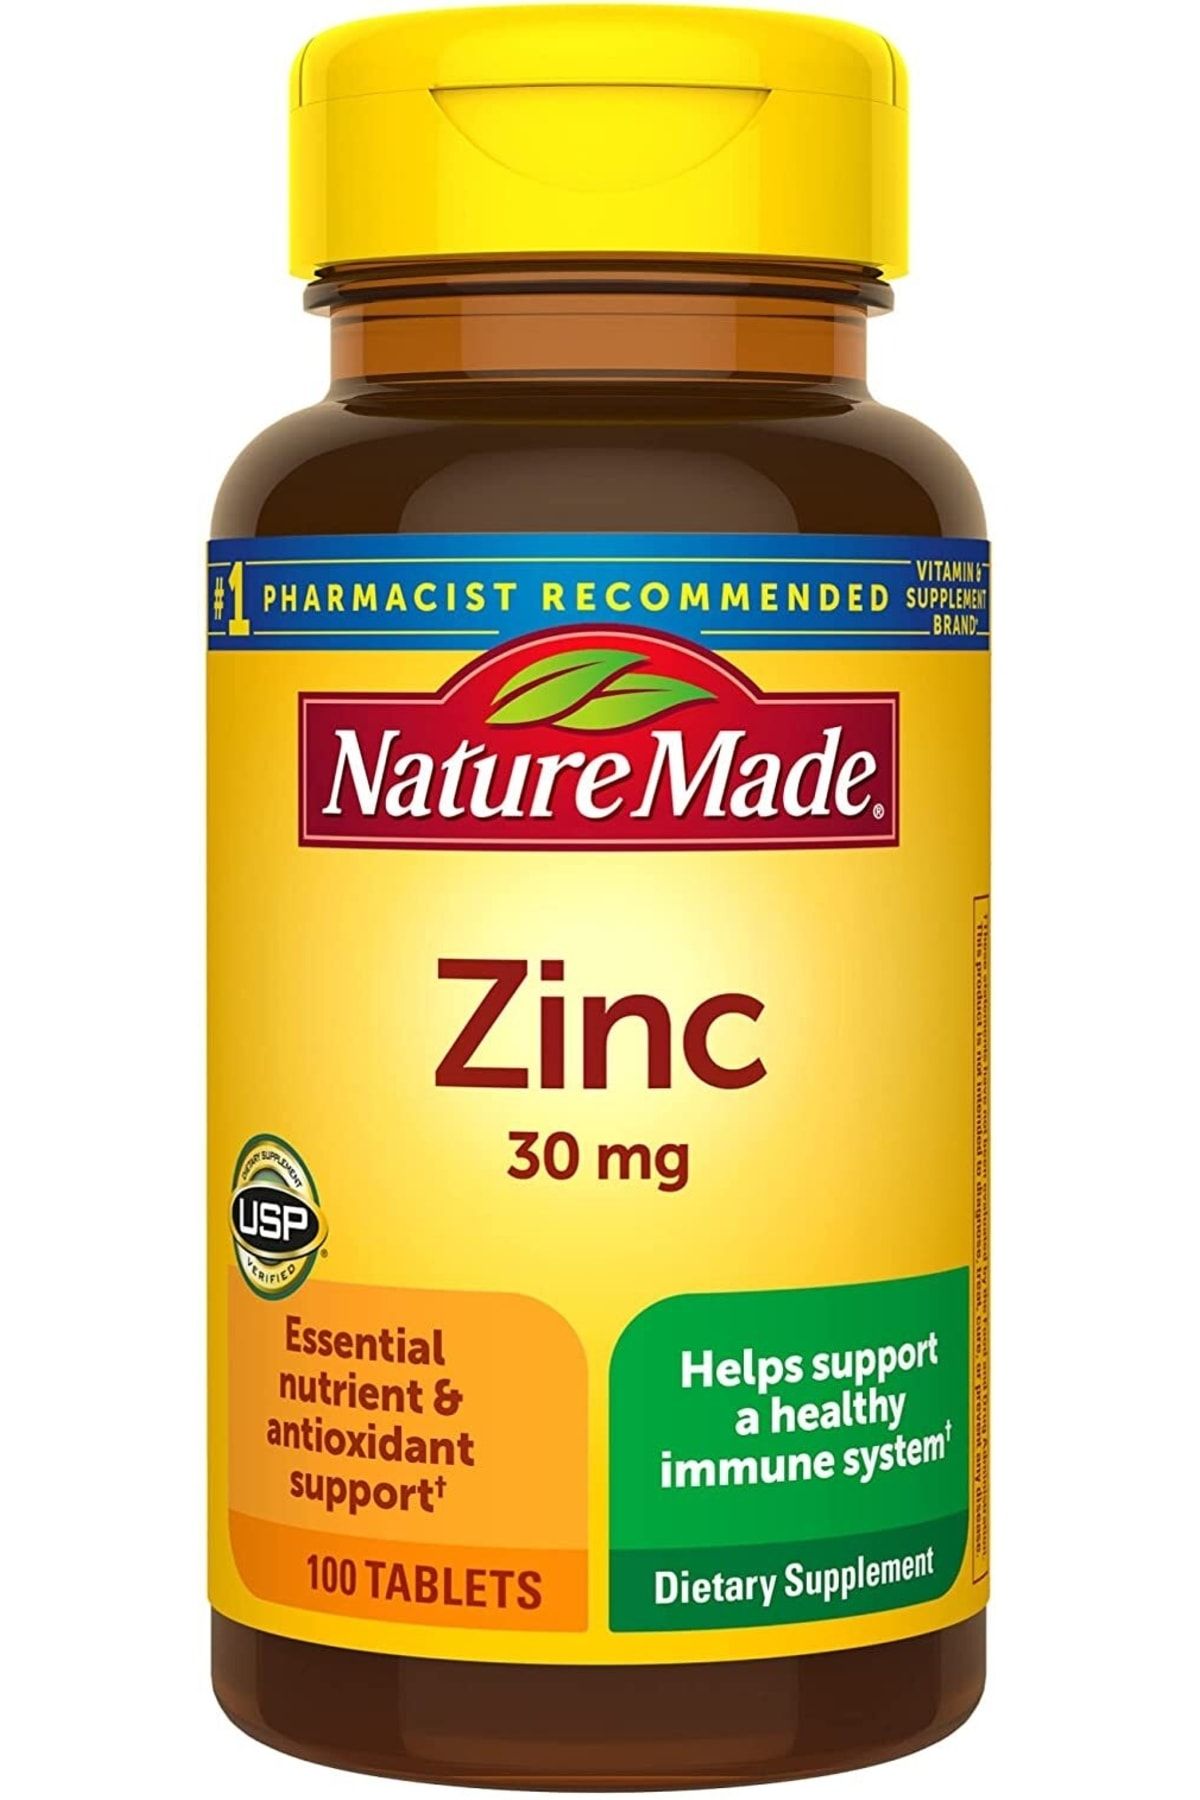 Natural Made Nature Made Zinc 30 Mg 100 Tablet